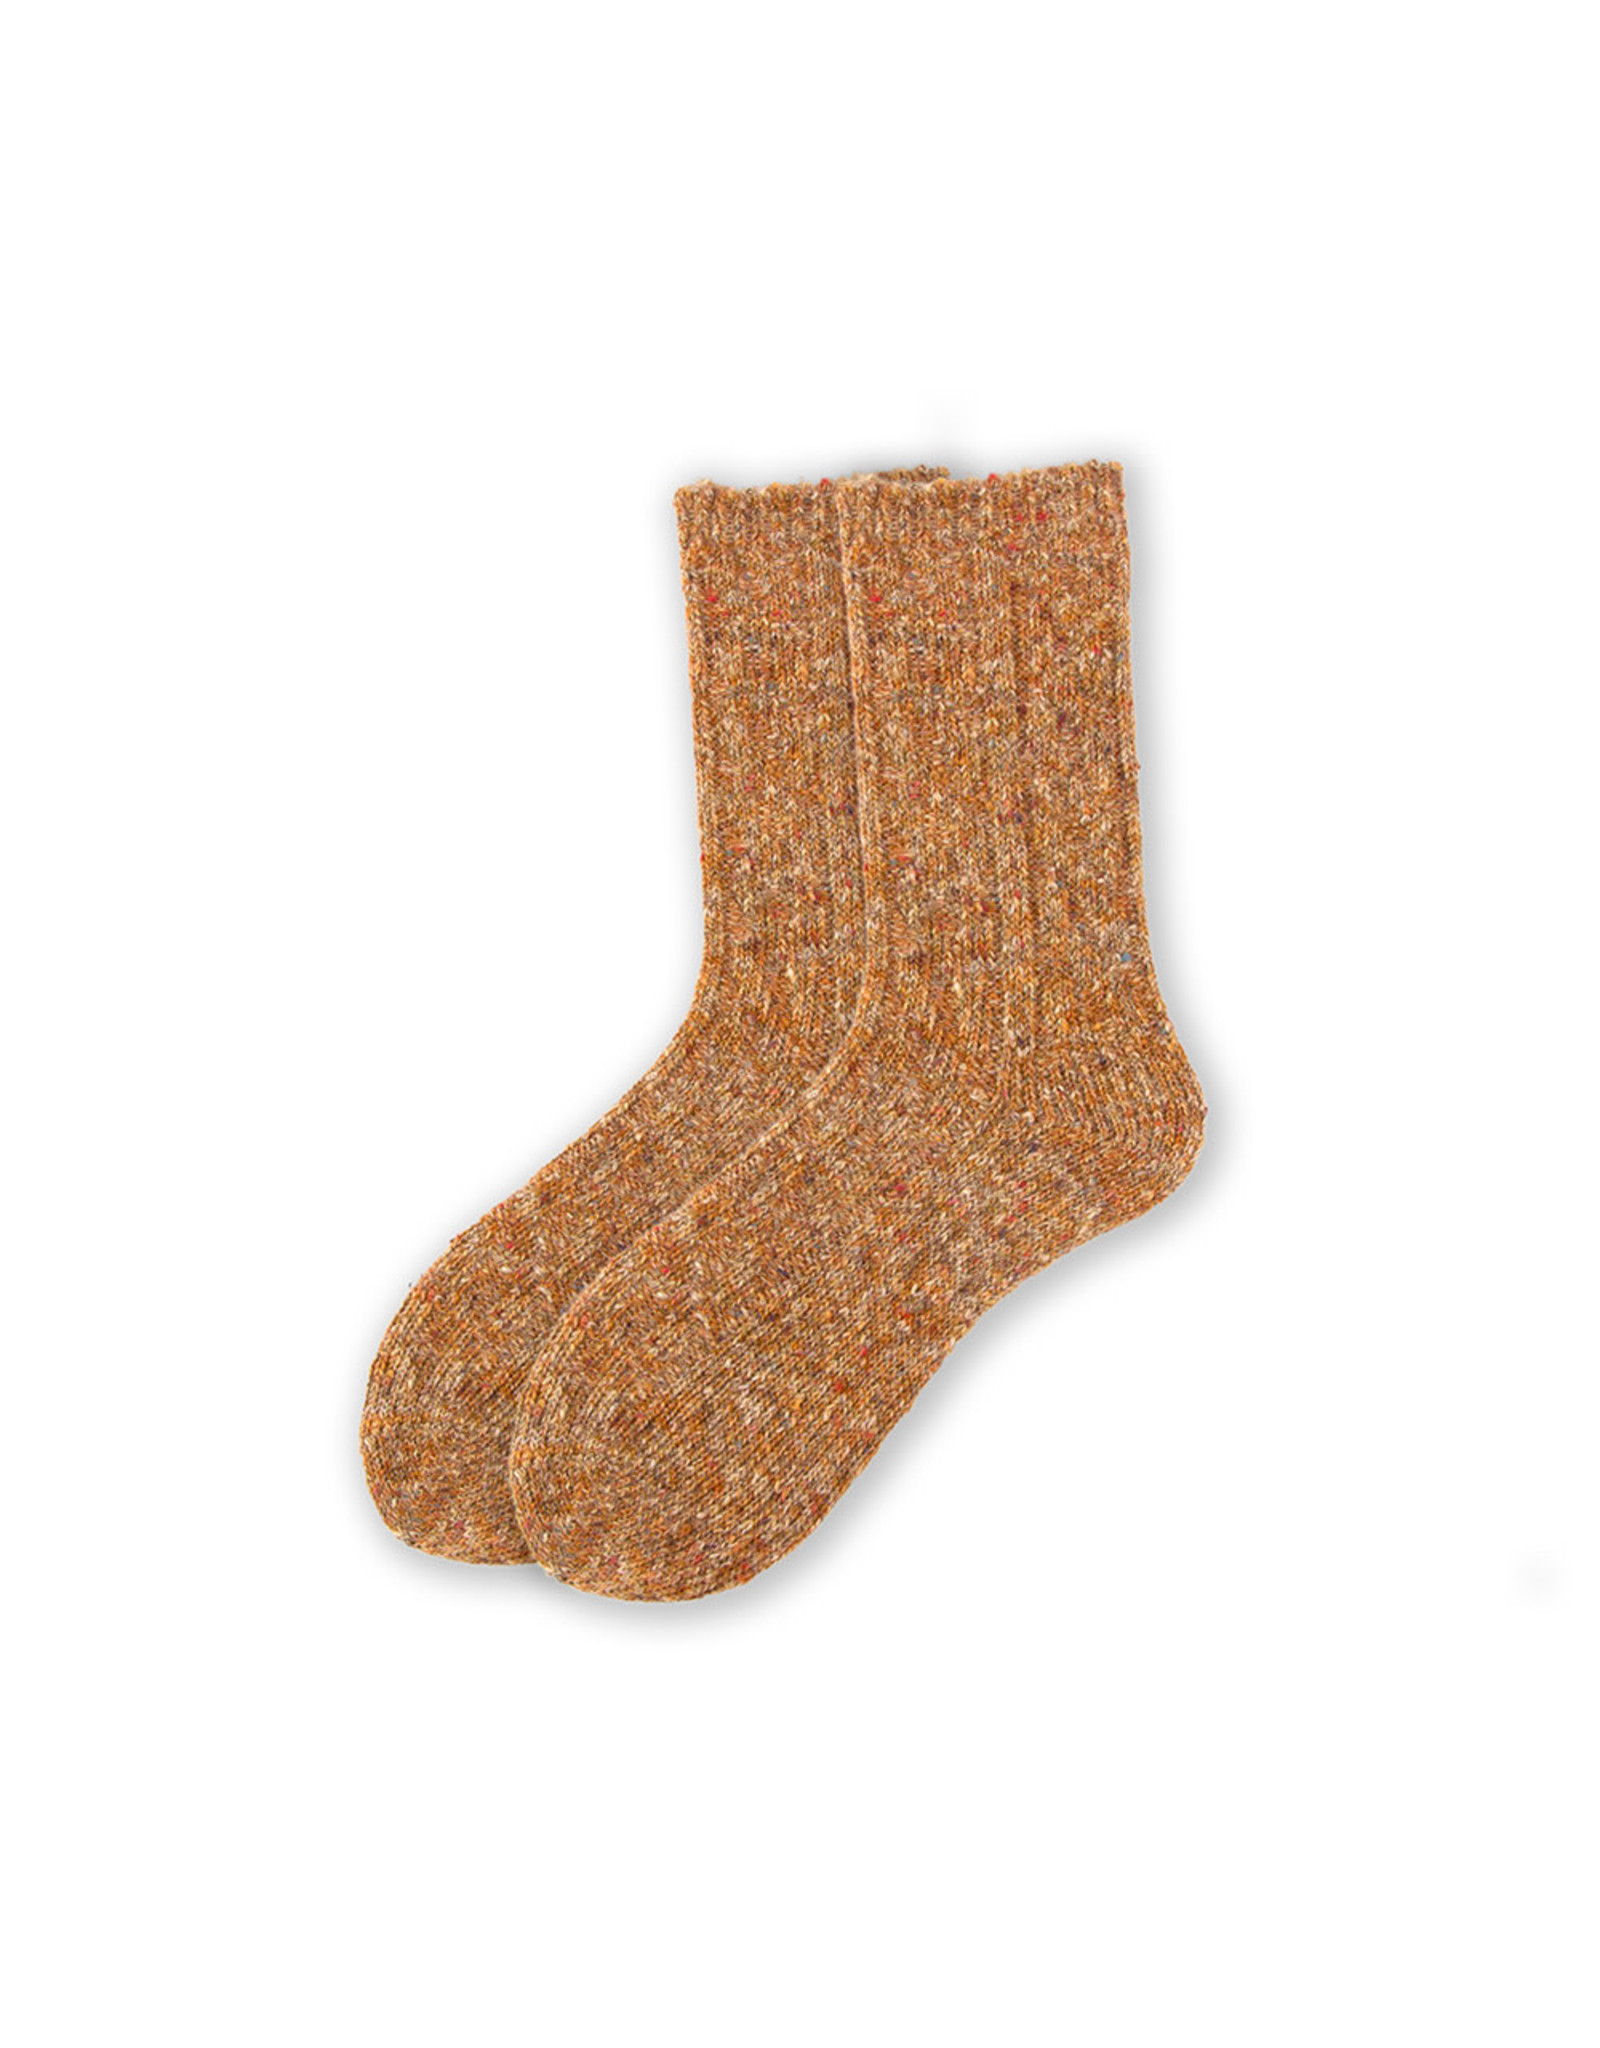 BGS XS Unified - Fishermen's Socks / Ginger